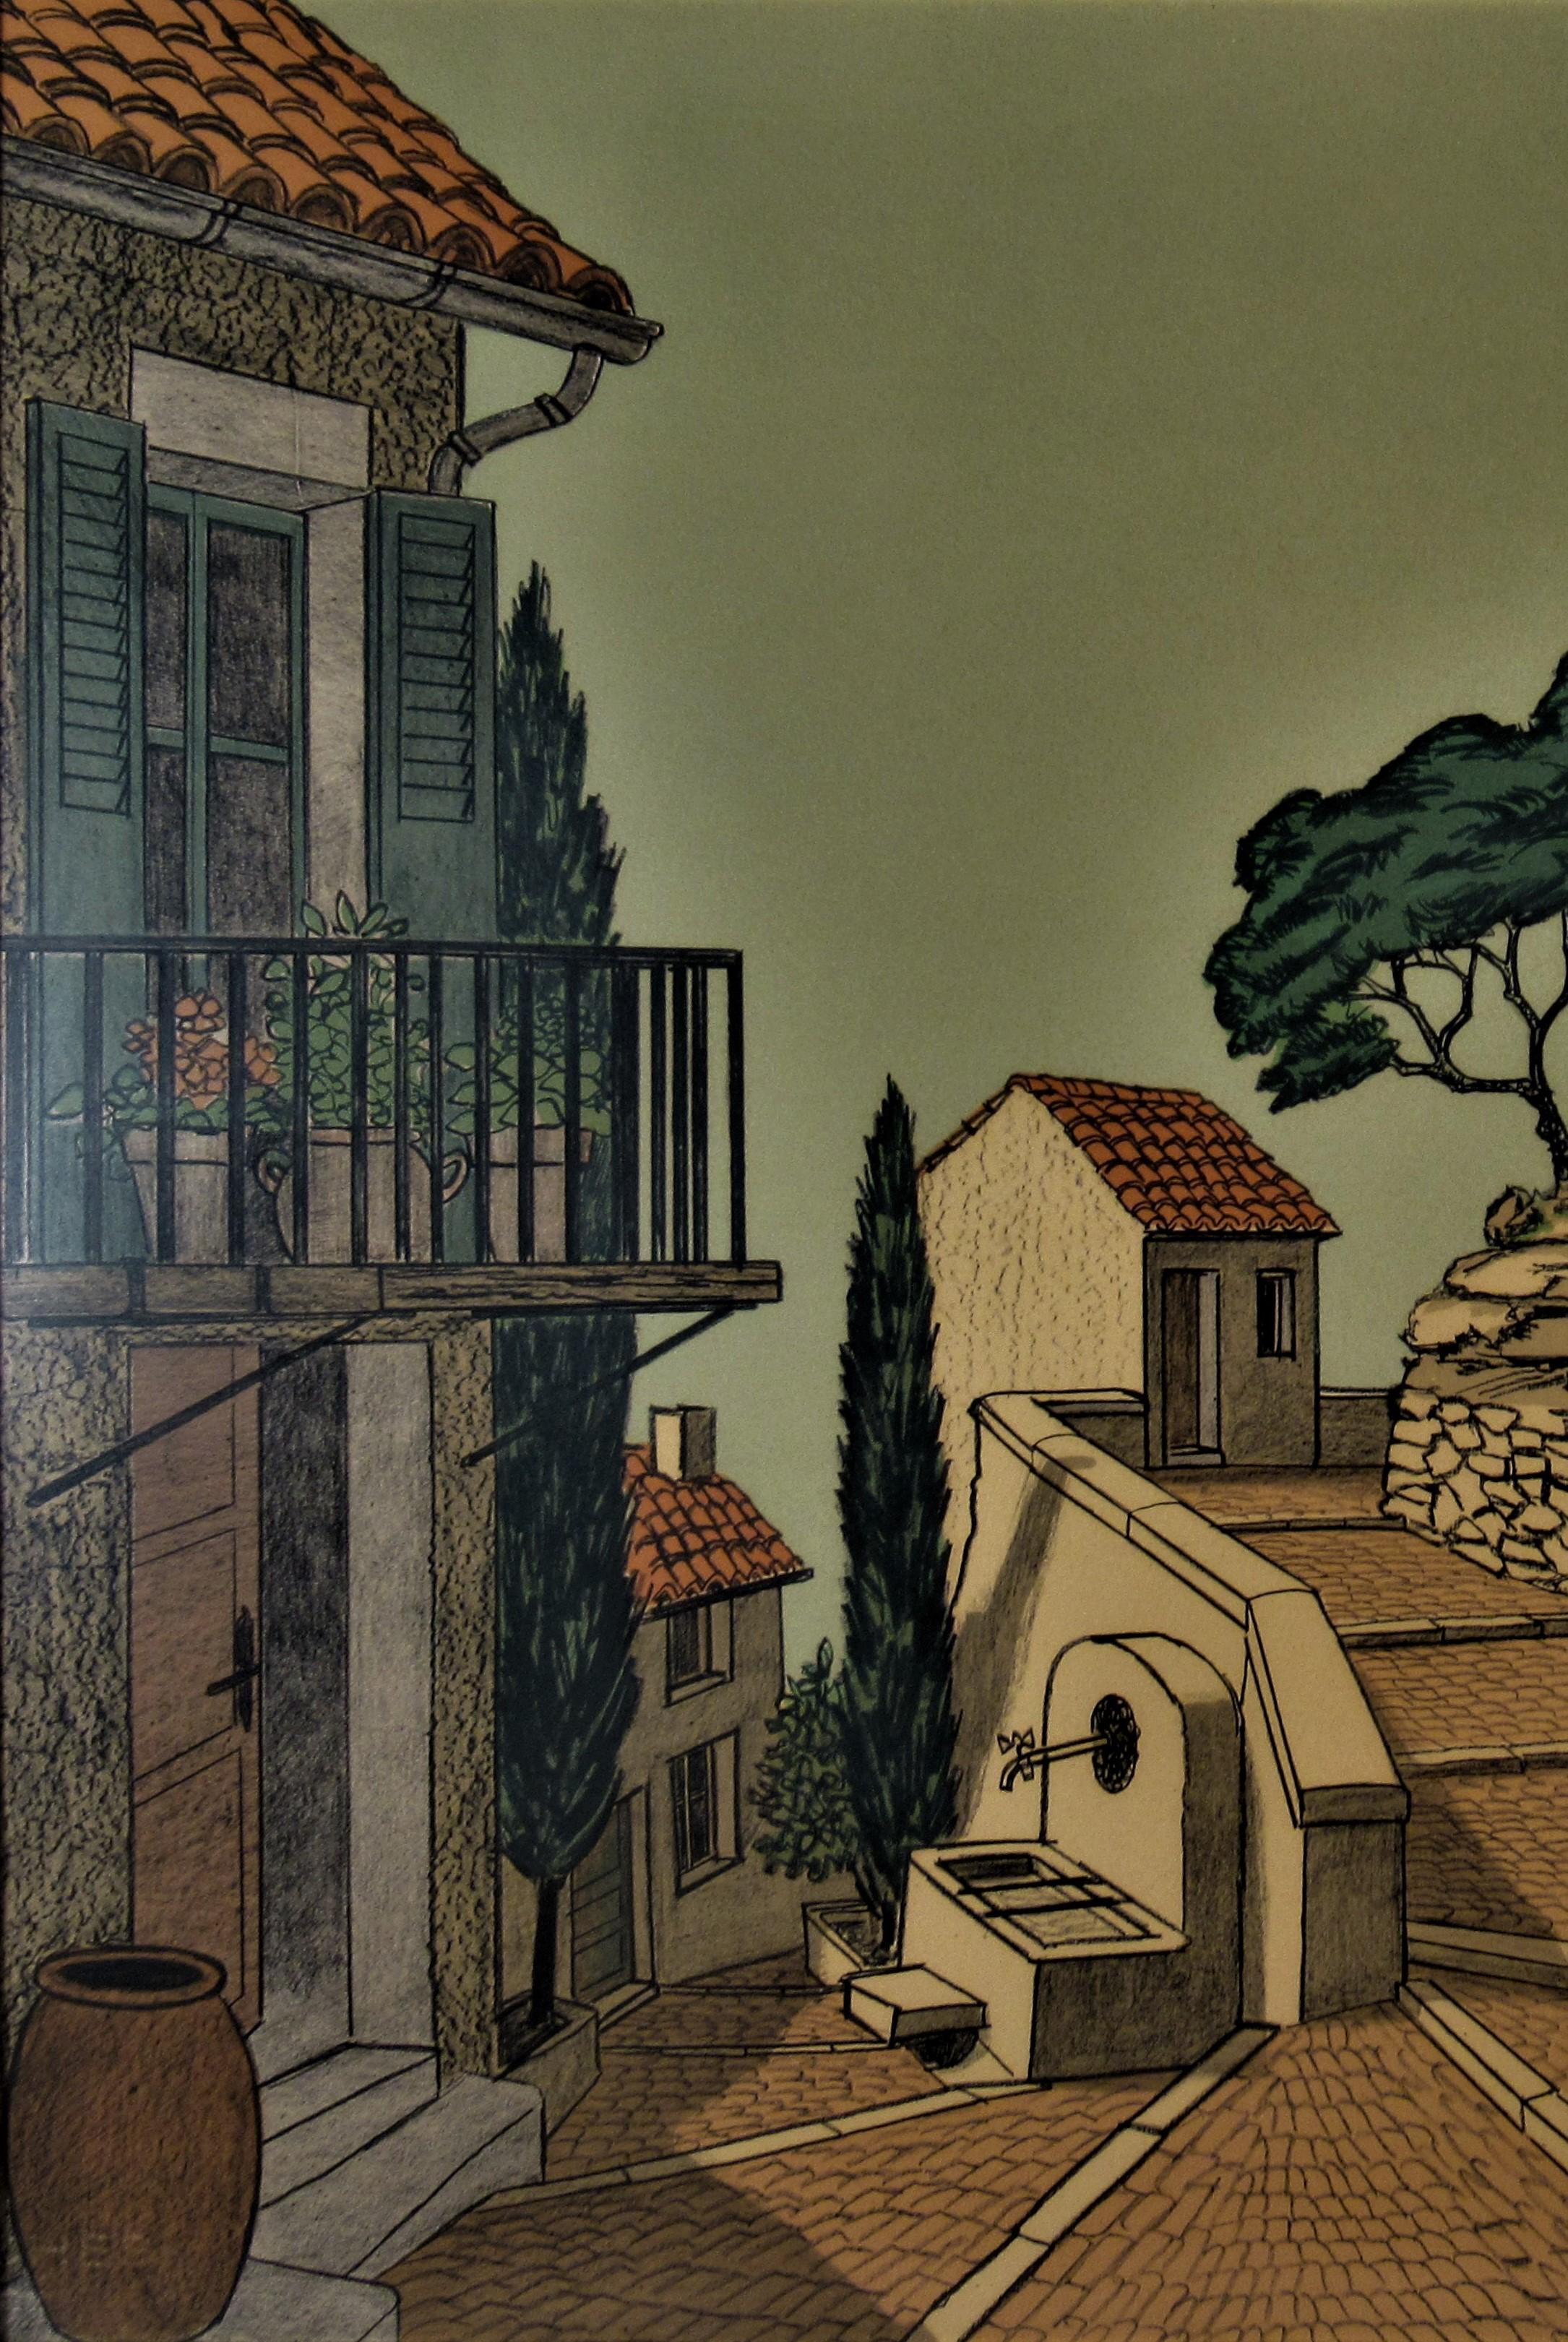 Village de Provence - Print by Denis Paul Noyer